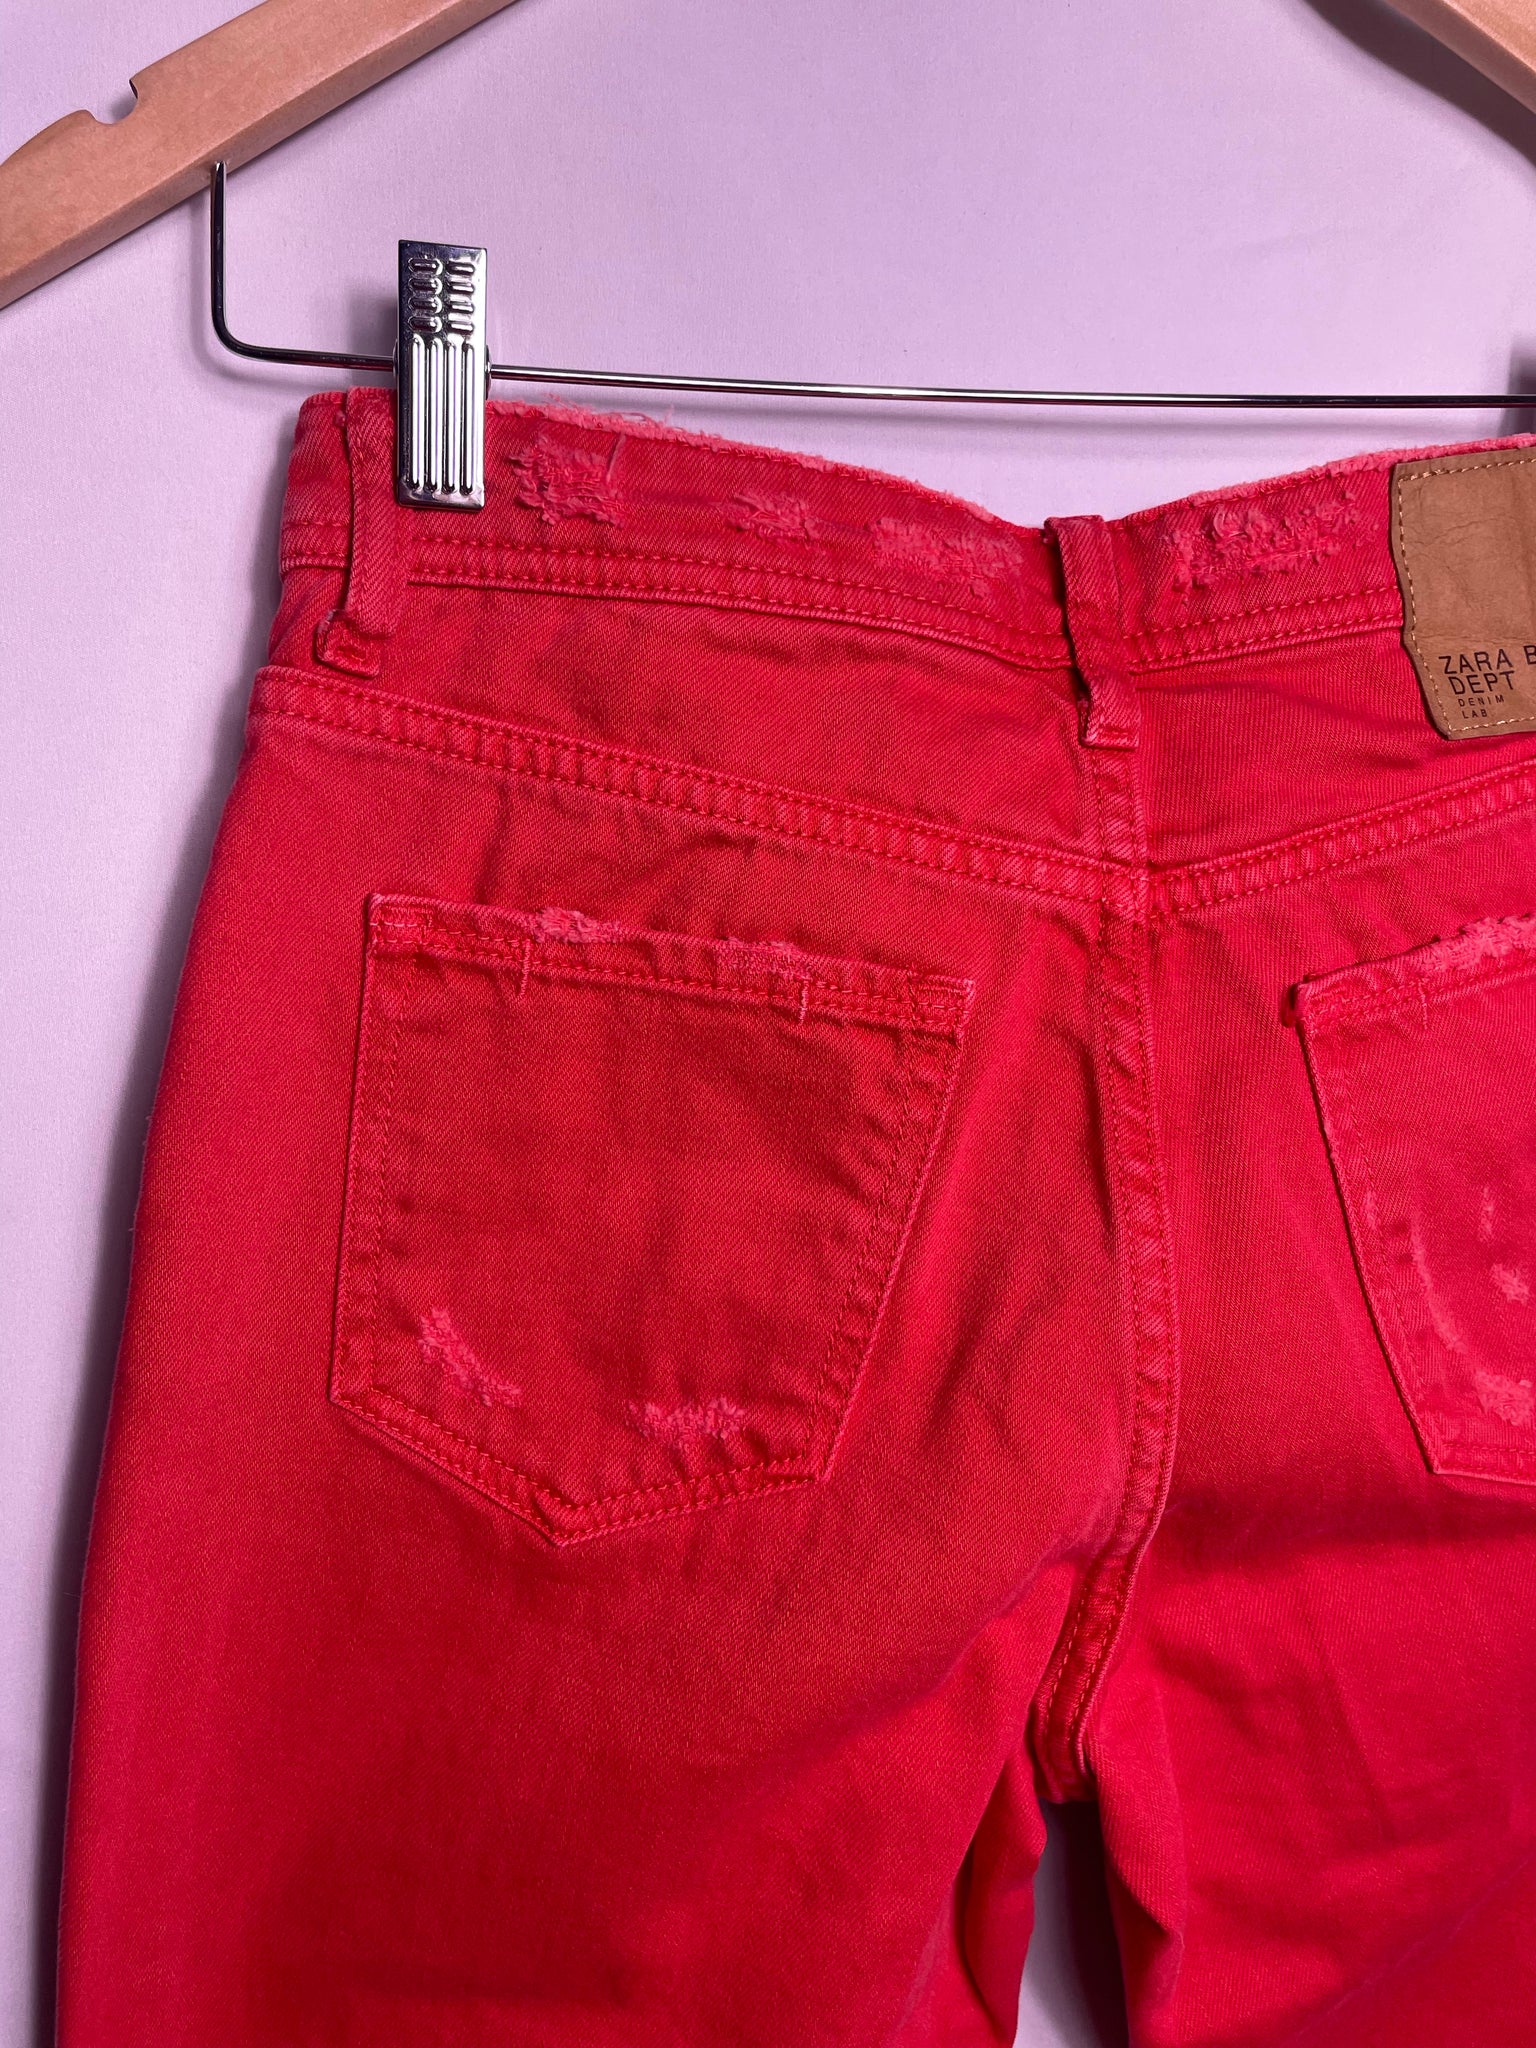 Zara coral skinny jeans, Size 2